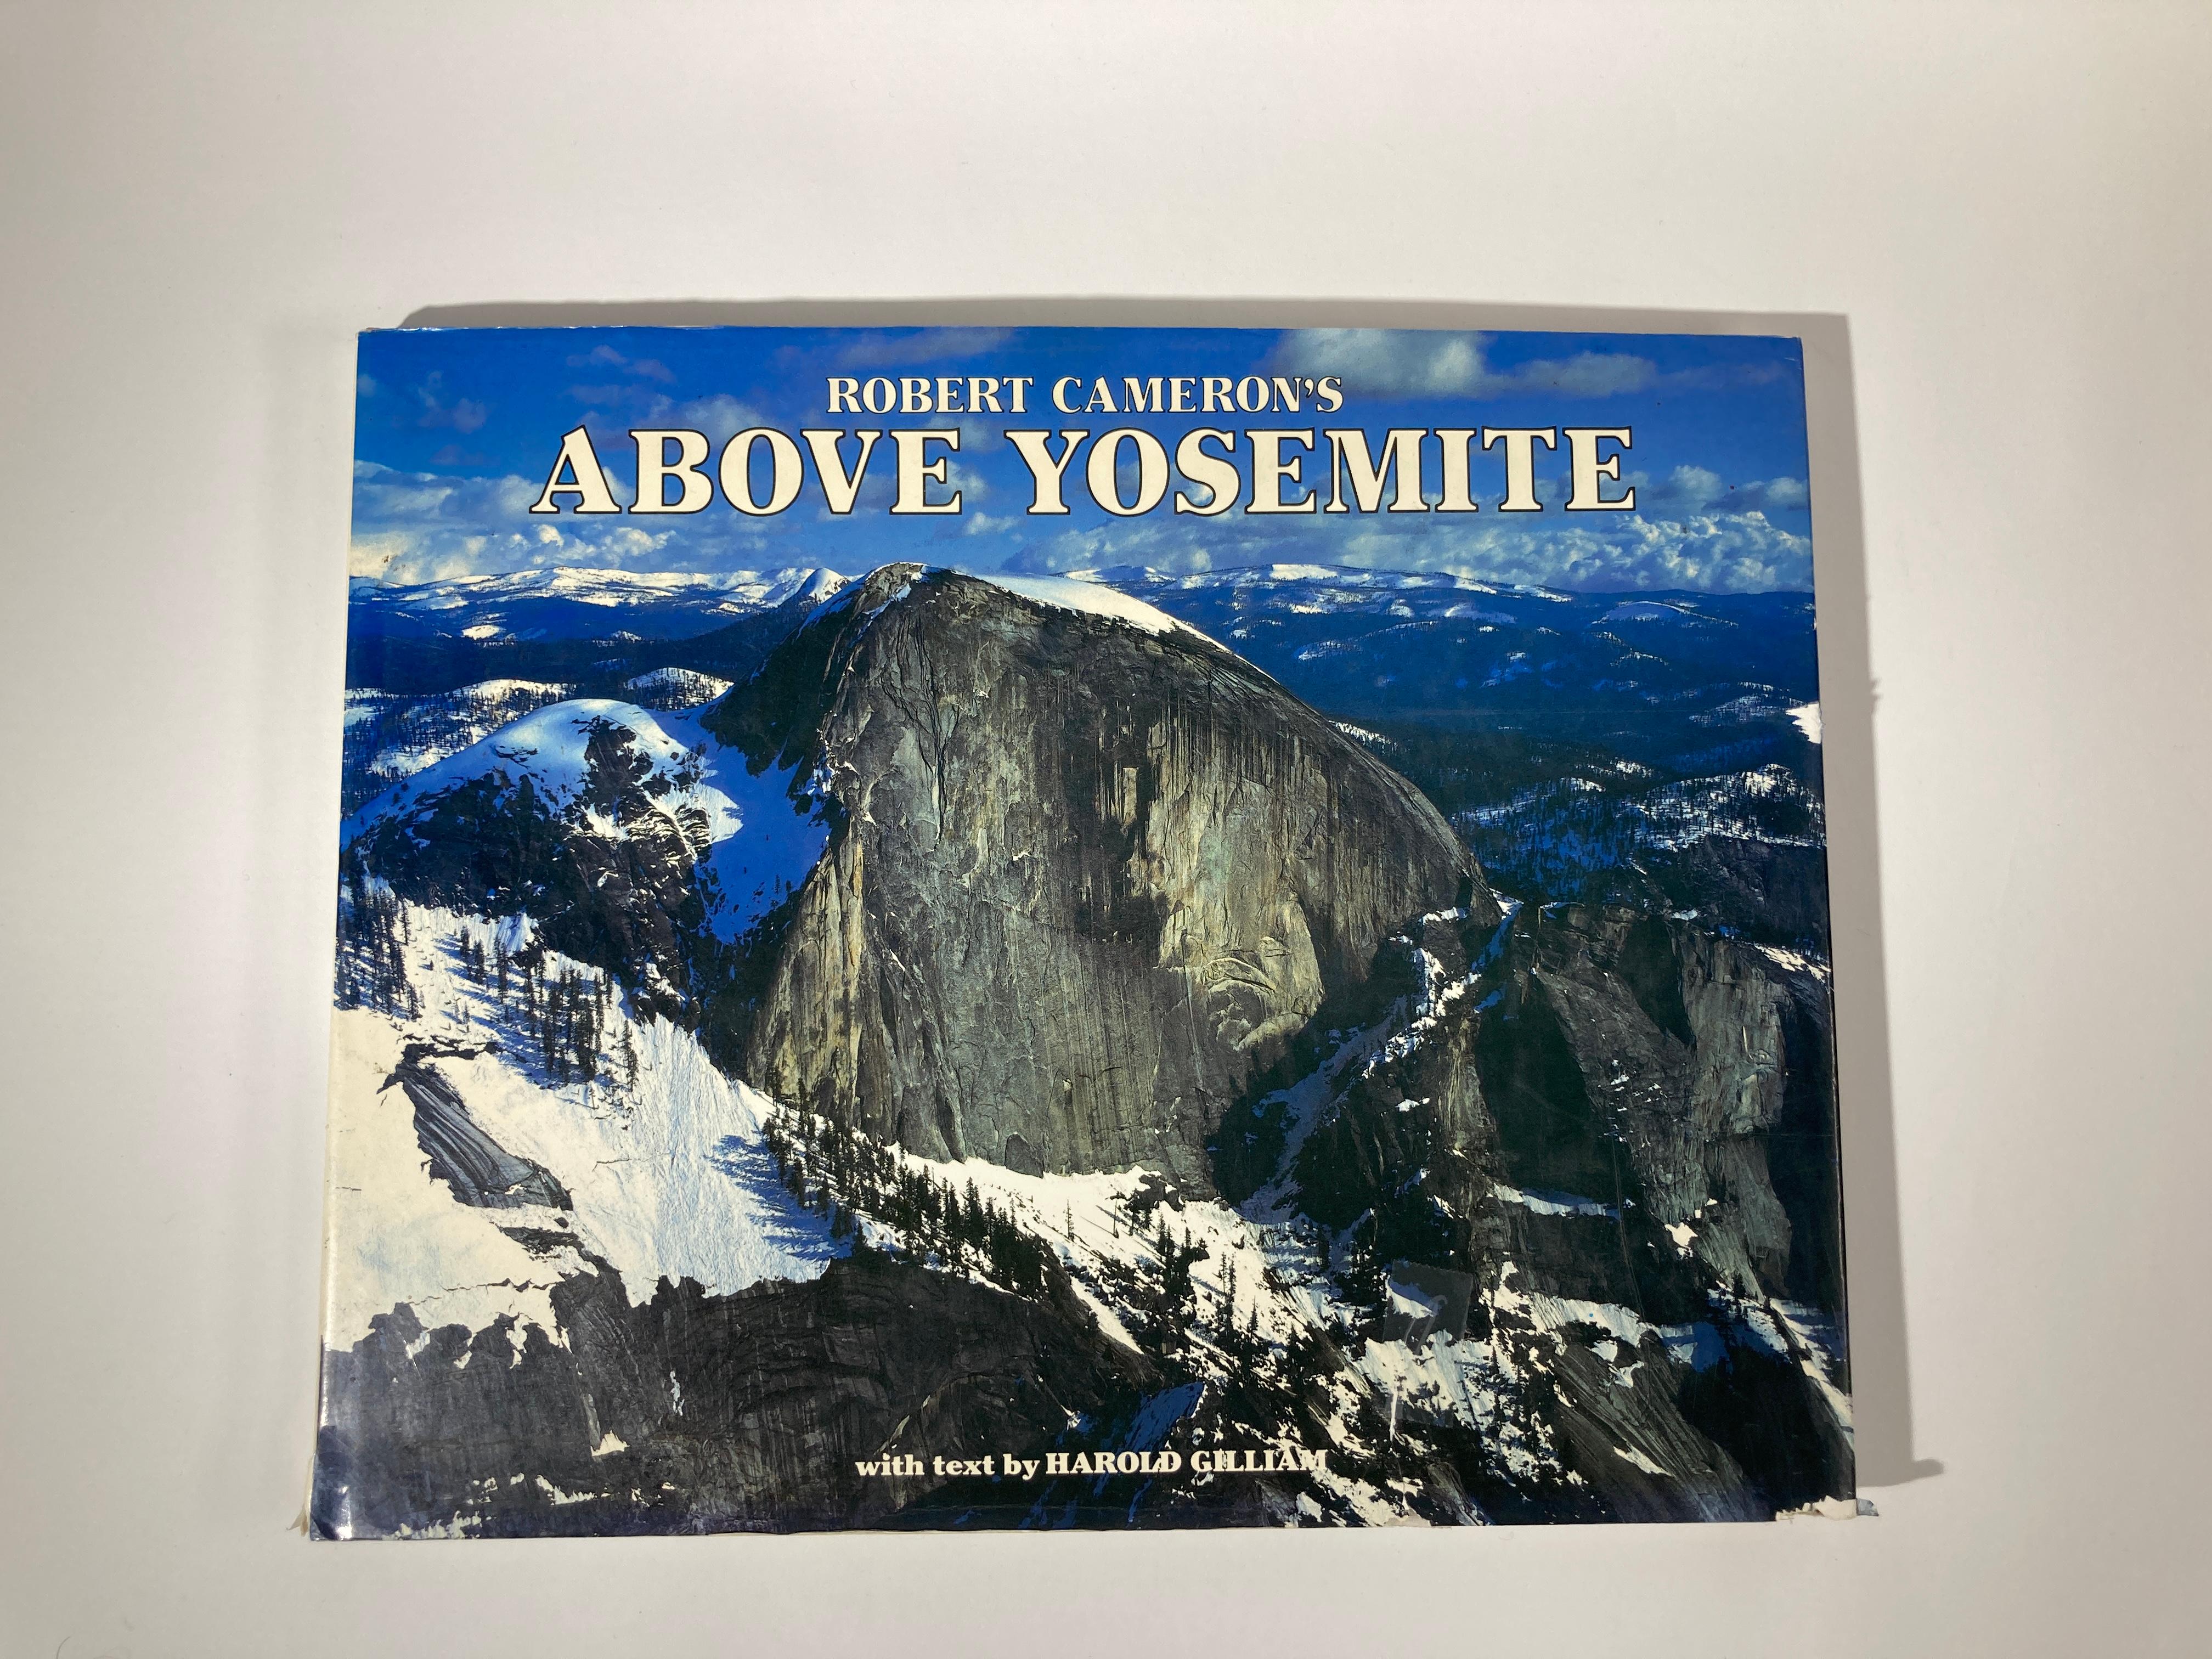 Oberhalb von Yosemite von Robert Cameron
Robert Cameron, Harold Gilliam
Titel: Oberhalb von Yosemite von Robert Cameron
Herausgeber: Cameron & Company
Erscheinungsdatum: 1983
Einband: Hardcover
Zustand des Buches: Gut
Inhaltsangabe:
Die